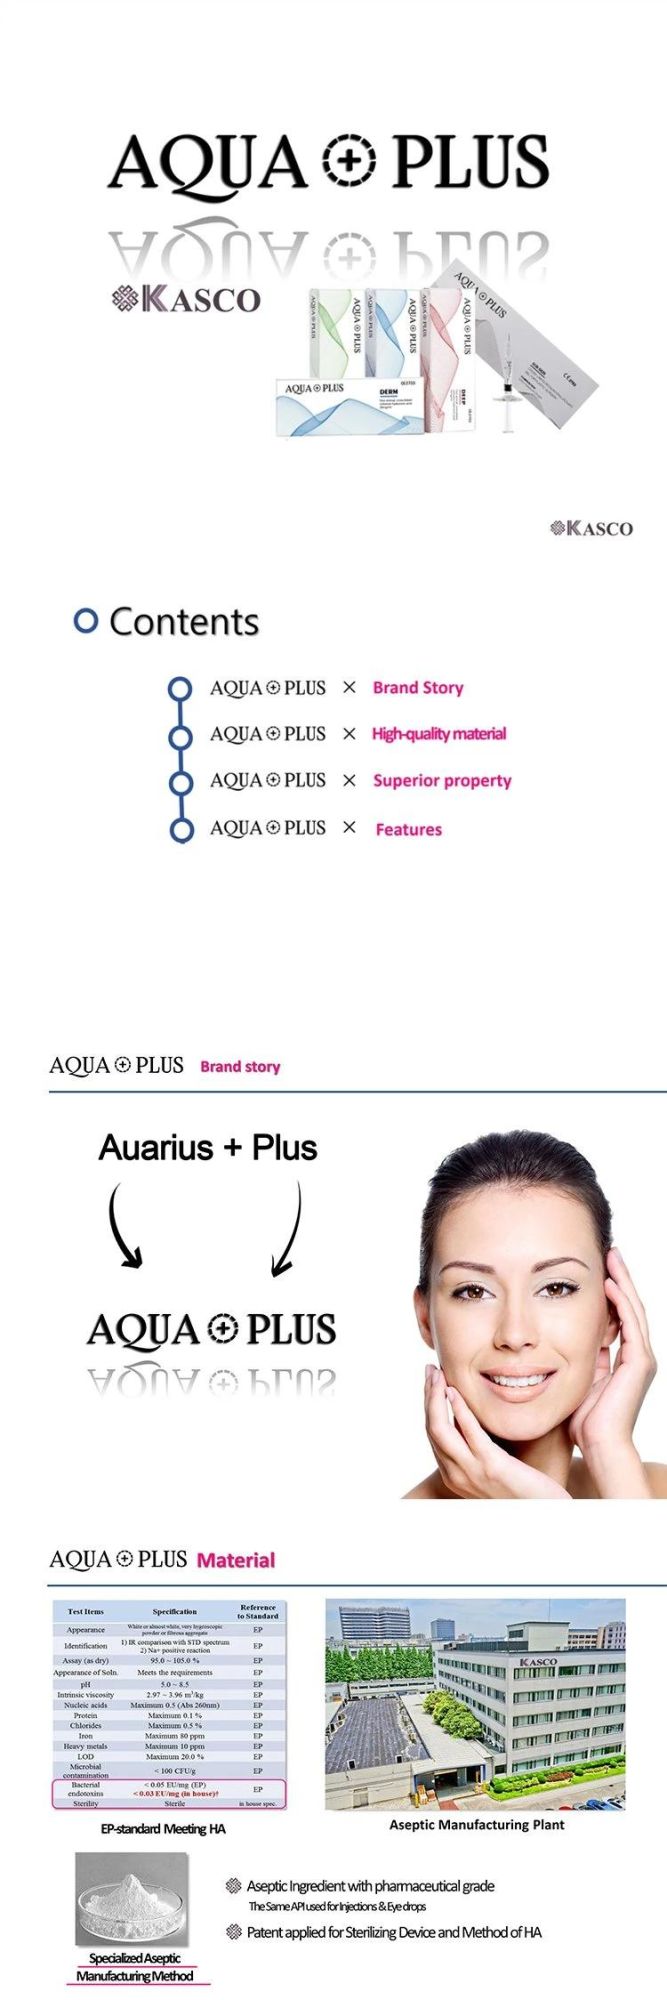 Aqua Plus Dermal Filler Aqua Plus Hyaluronic Acid Anti Aging Injectable Korea Fillers